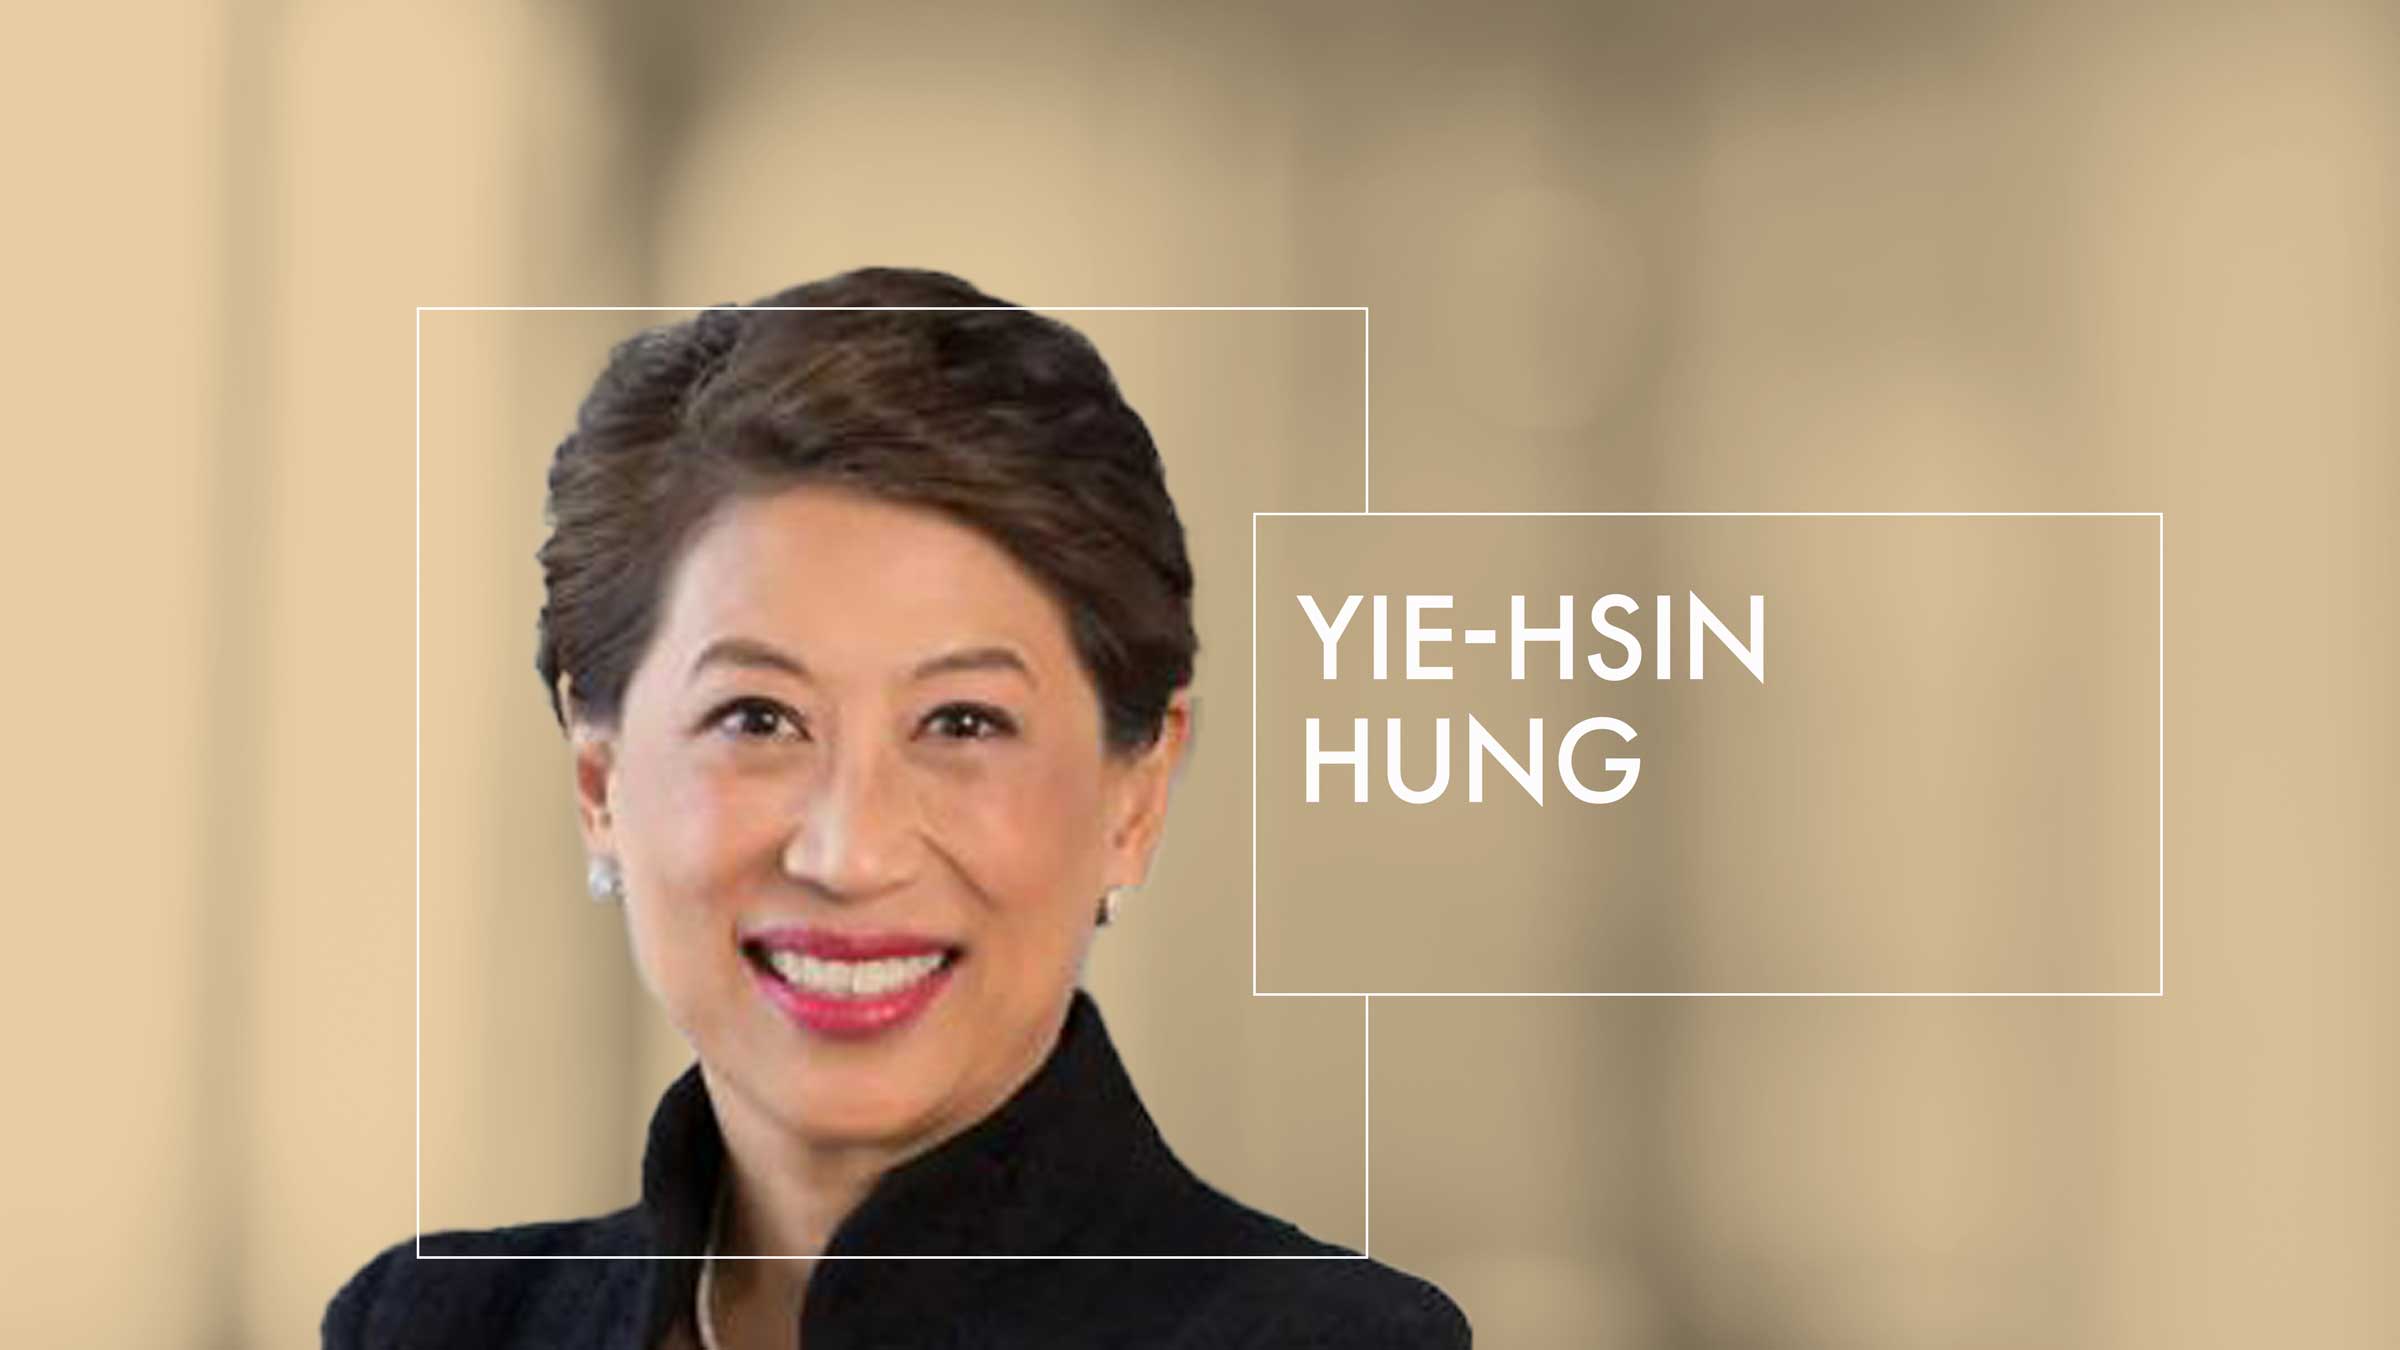 Yie-Hsin Hung